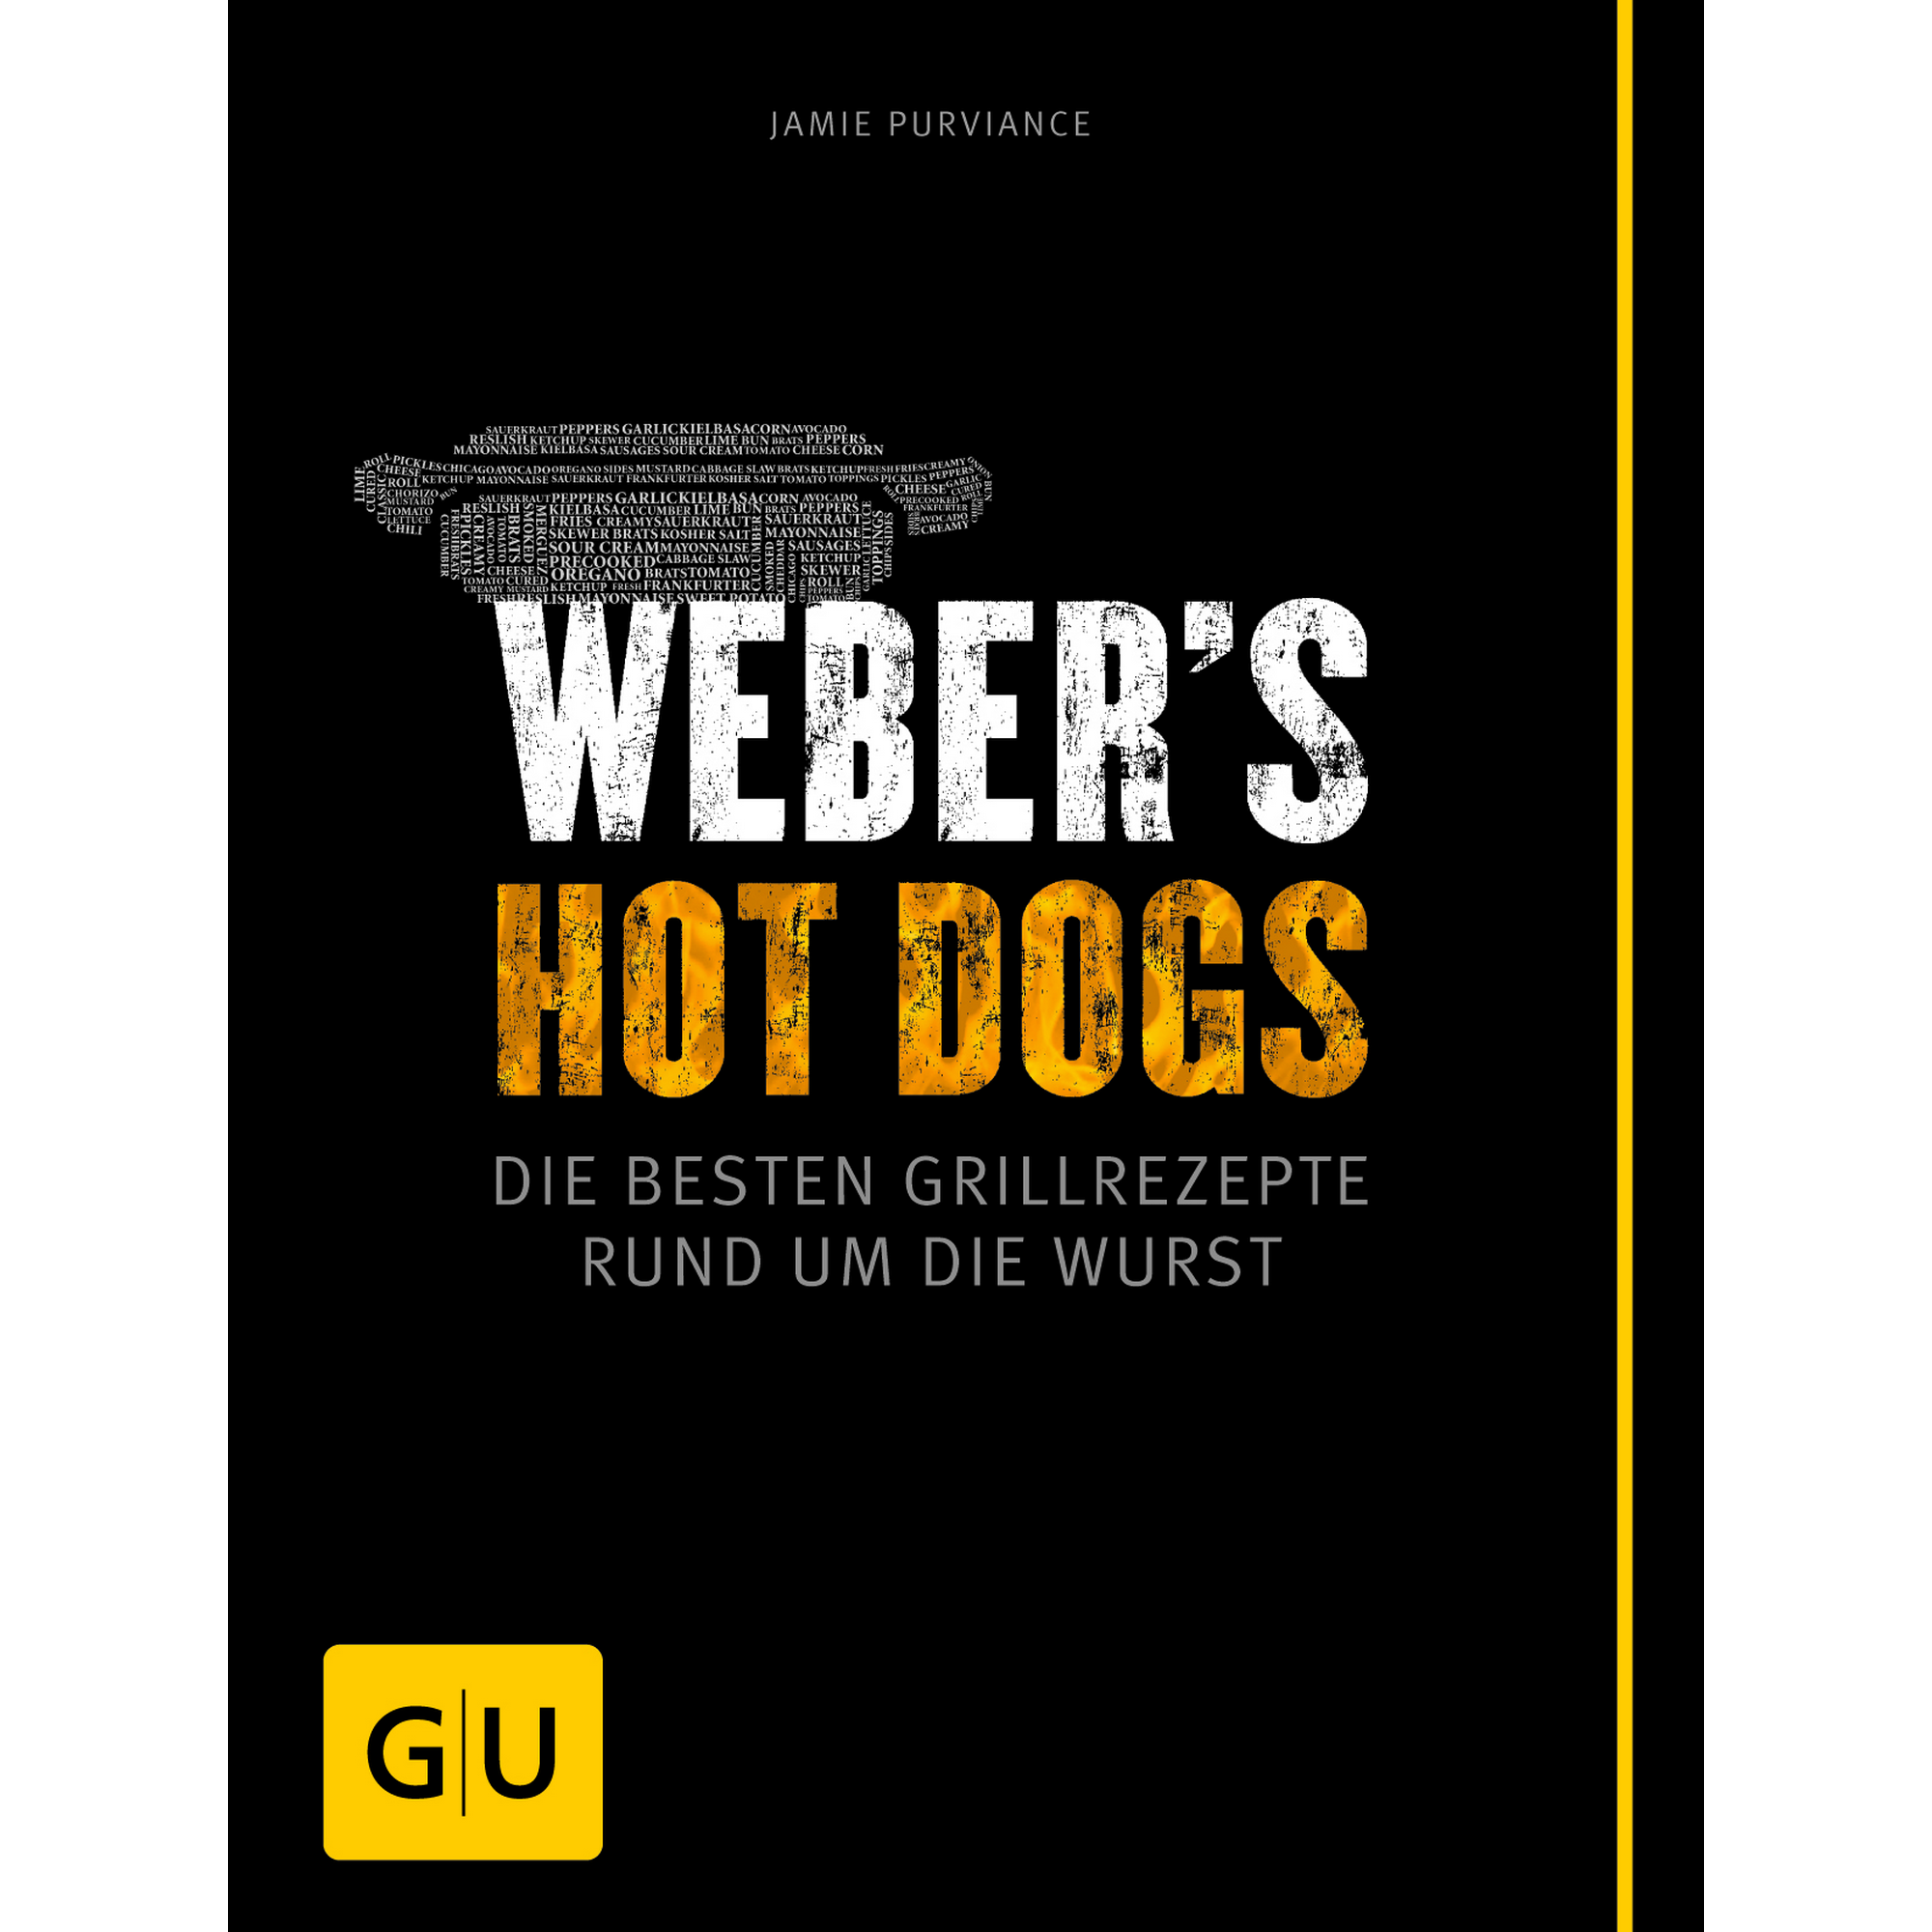 Grillbuch Jamie Purviance 'Weber's Hot Dogs: Die besten Grillrezepte rund um die Wurst' + product picture